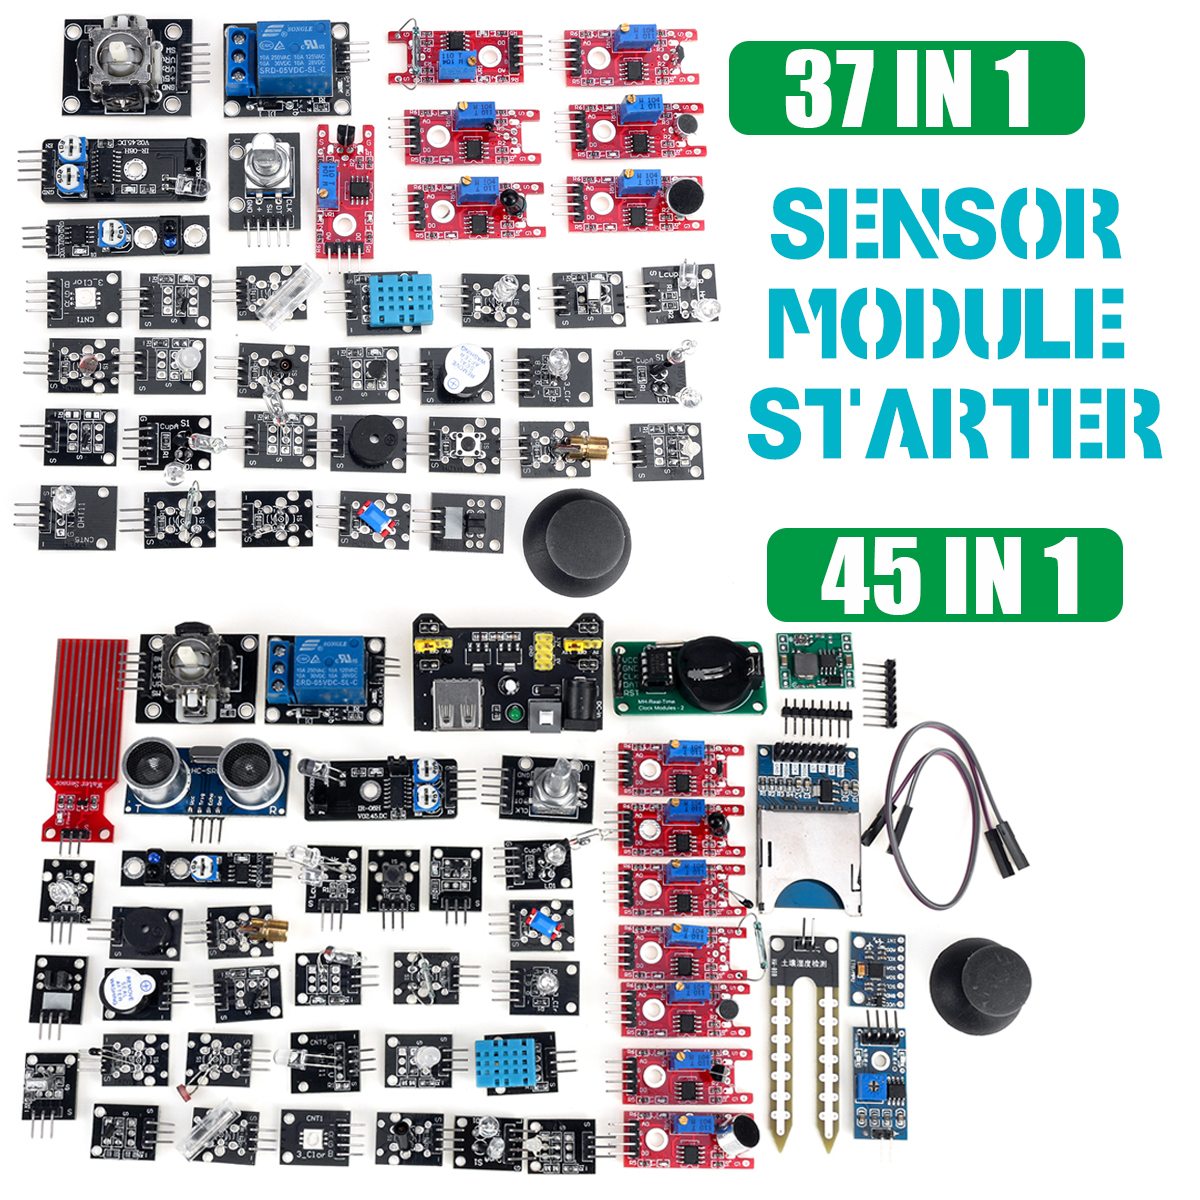 45 In 1 Sensor Module Starter Kit Updated 37 Sensor Kit For Arduino Education